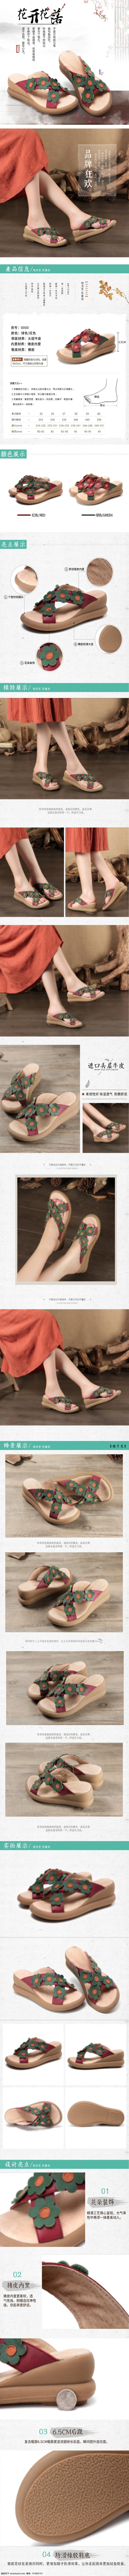 中国 风 女性 鞋子 详情 电商 模版 女鞋 详情页 排版 复古风 复古色